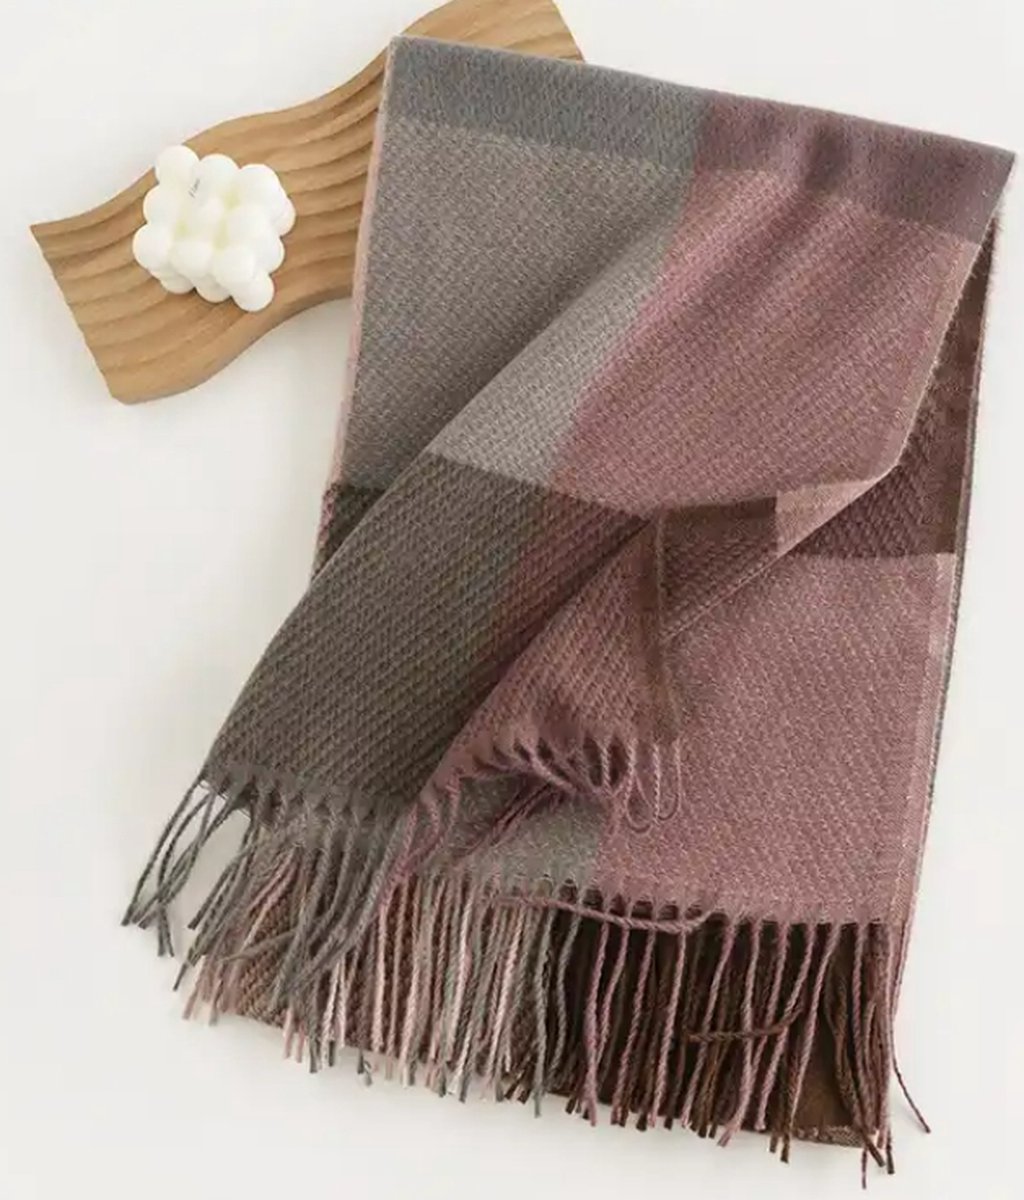 Sjaal grey/viola / super zacht / 206 cm lang en 65 cm breed / verkrijgbaar in 10 verschillende kleuren